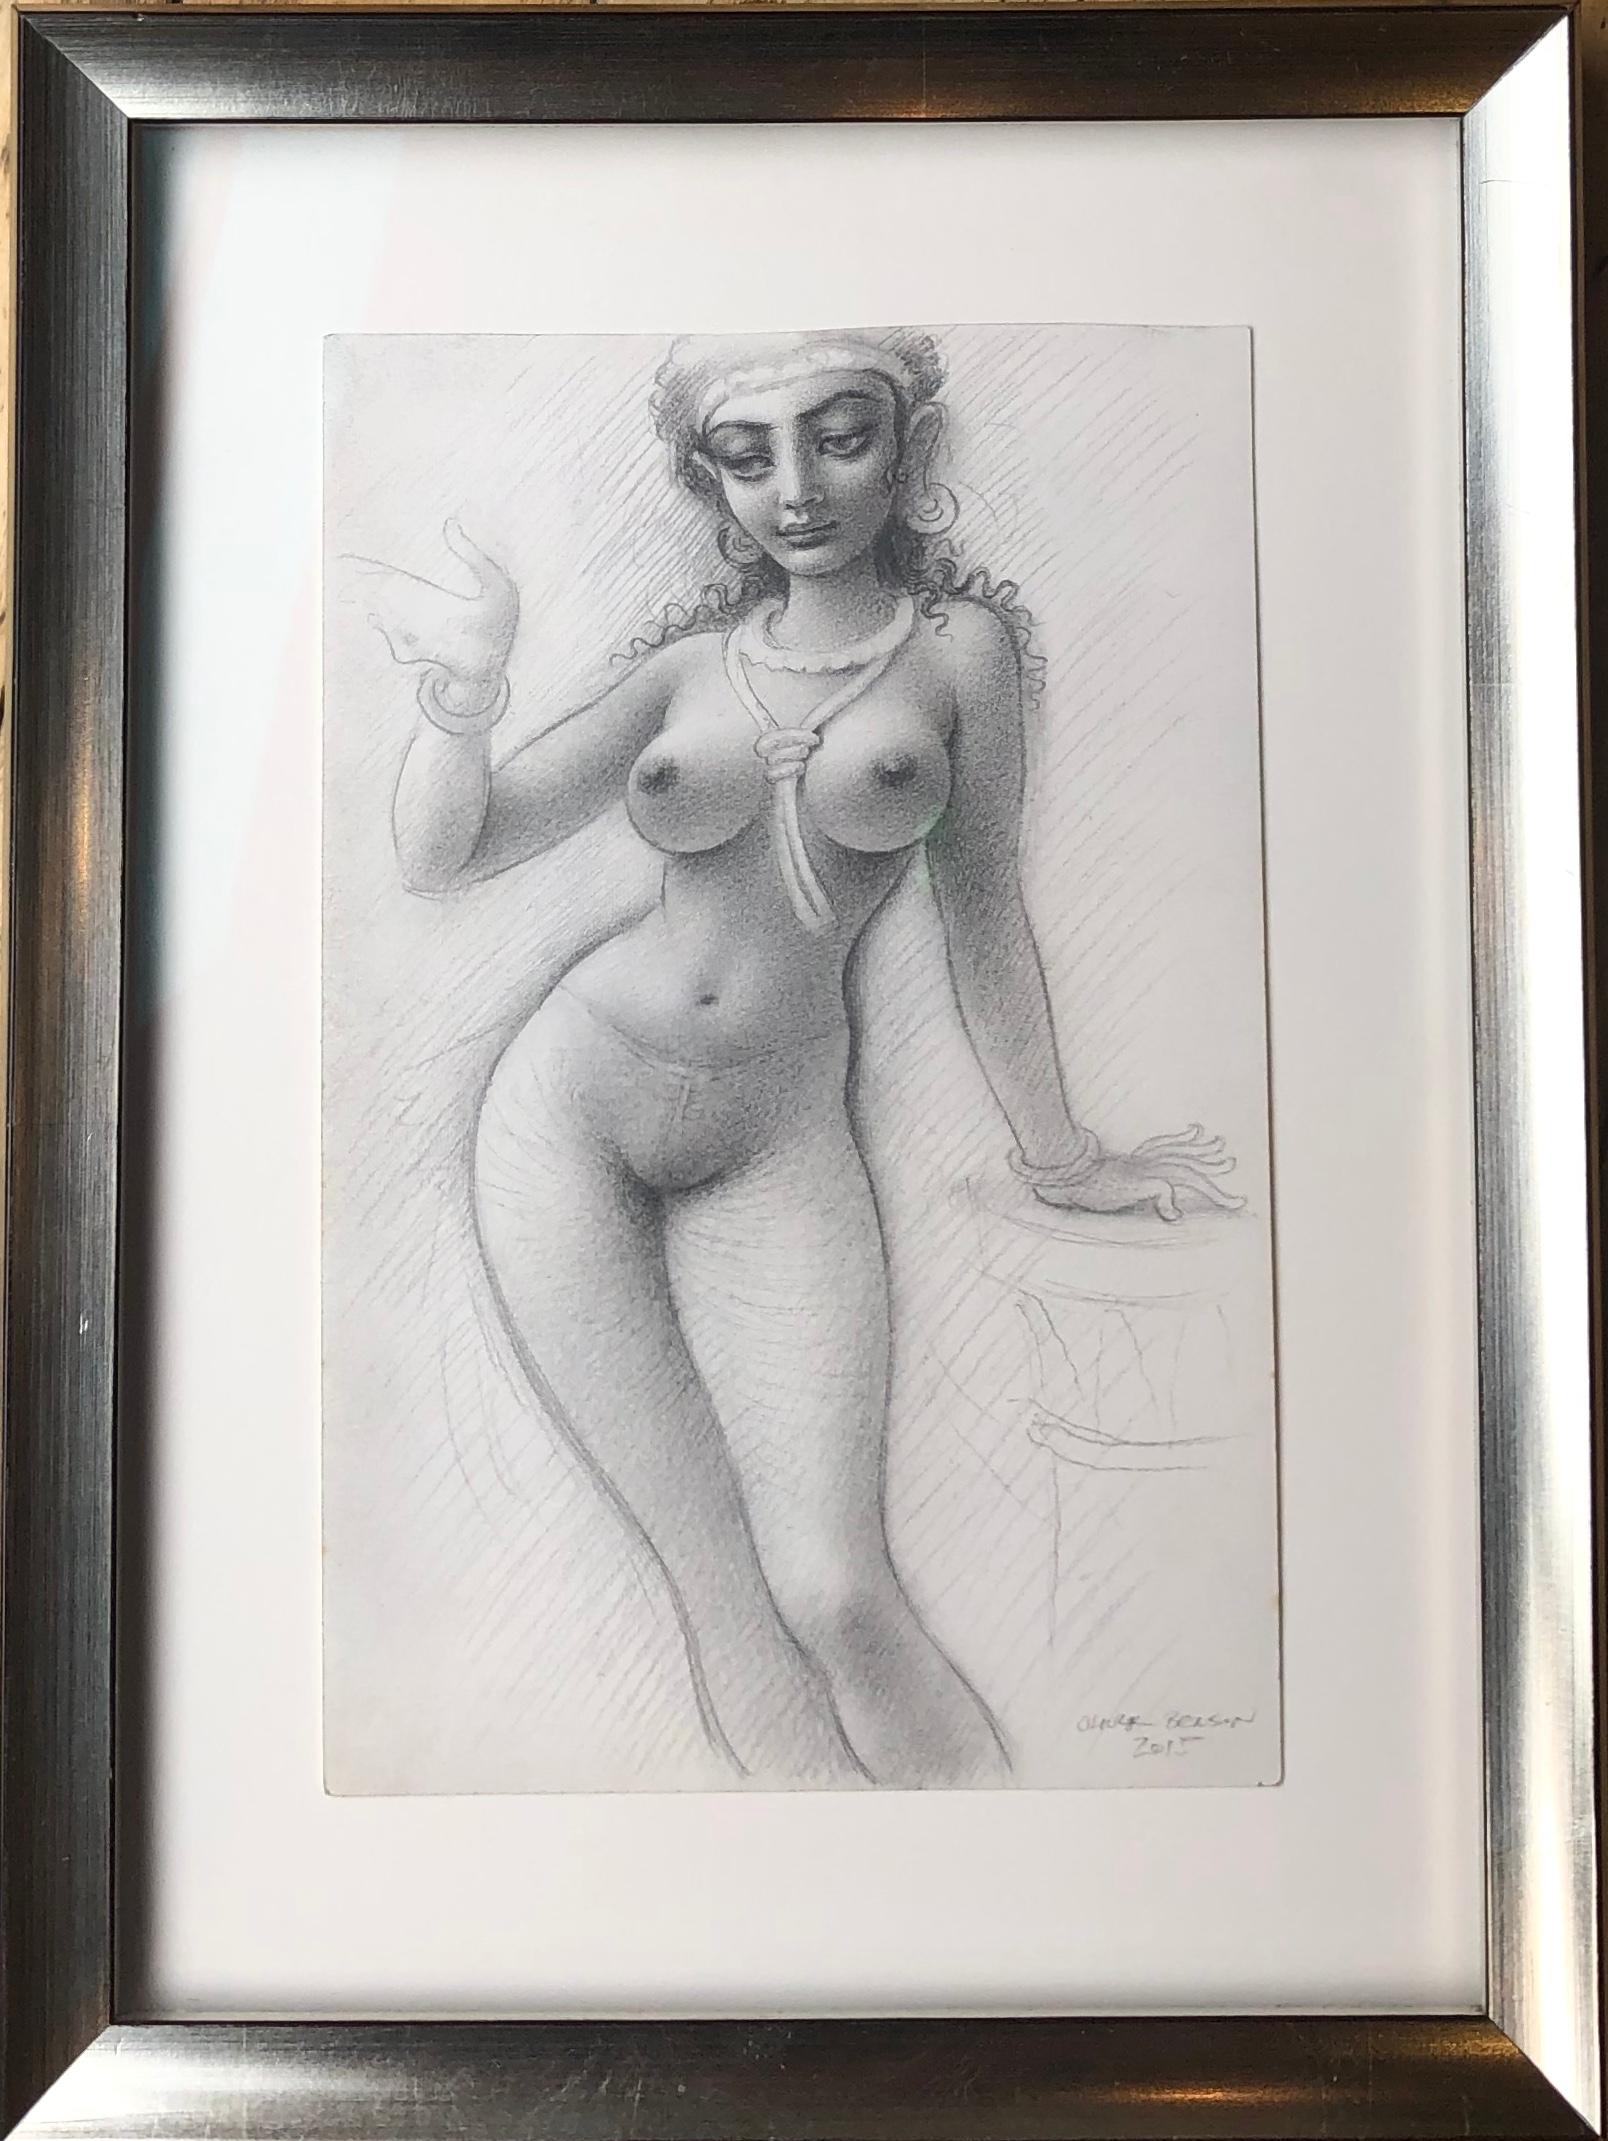 Lady of the Temple, nackte weibliche Figur, detailreiche Bleistiftzeichnung, gerahmt (Grau), Figurative Art, von Oliver Hazard